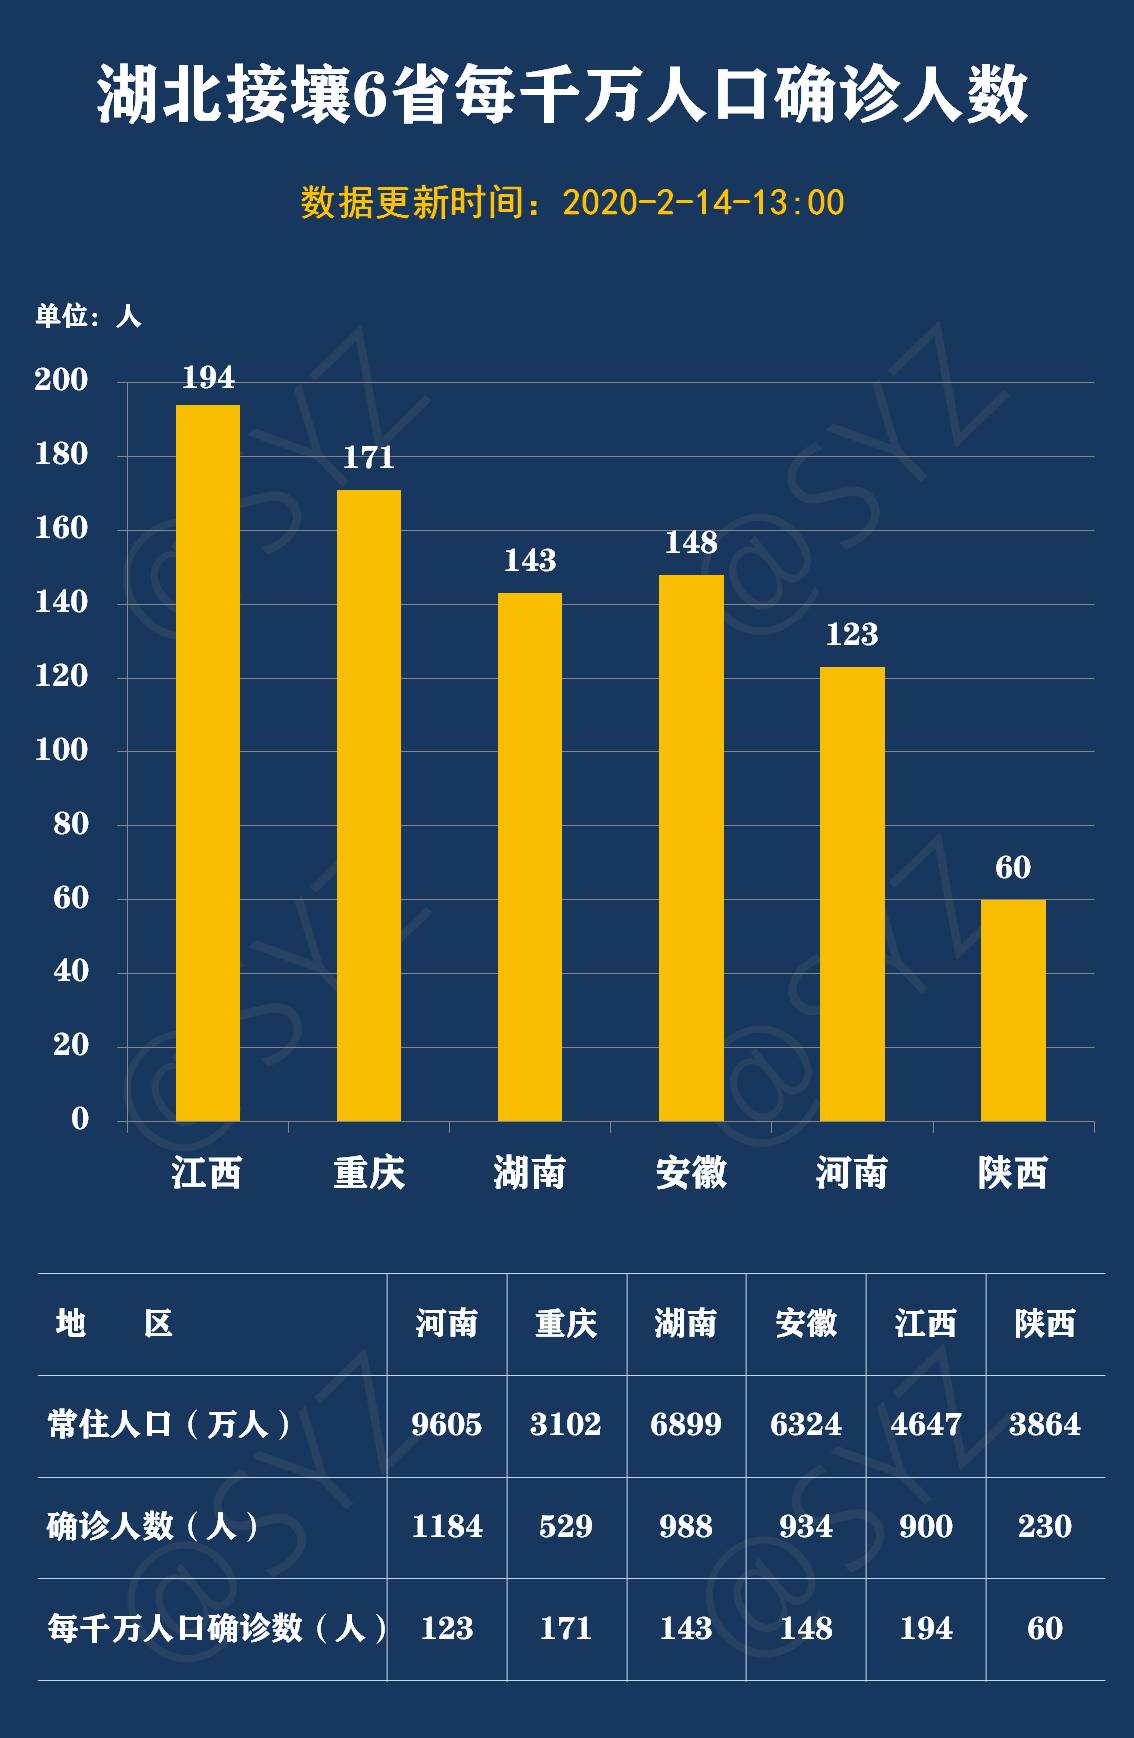 陕西省统计局通过9张图表为您解码陕西最新疫情态势